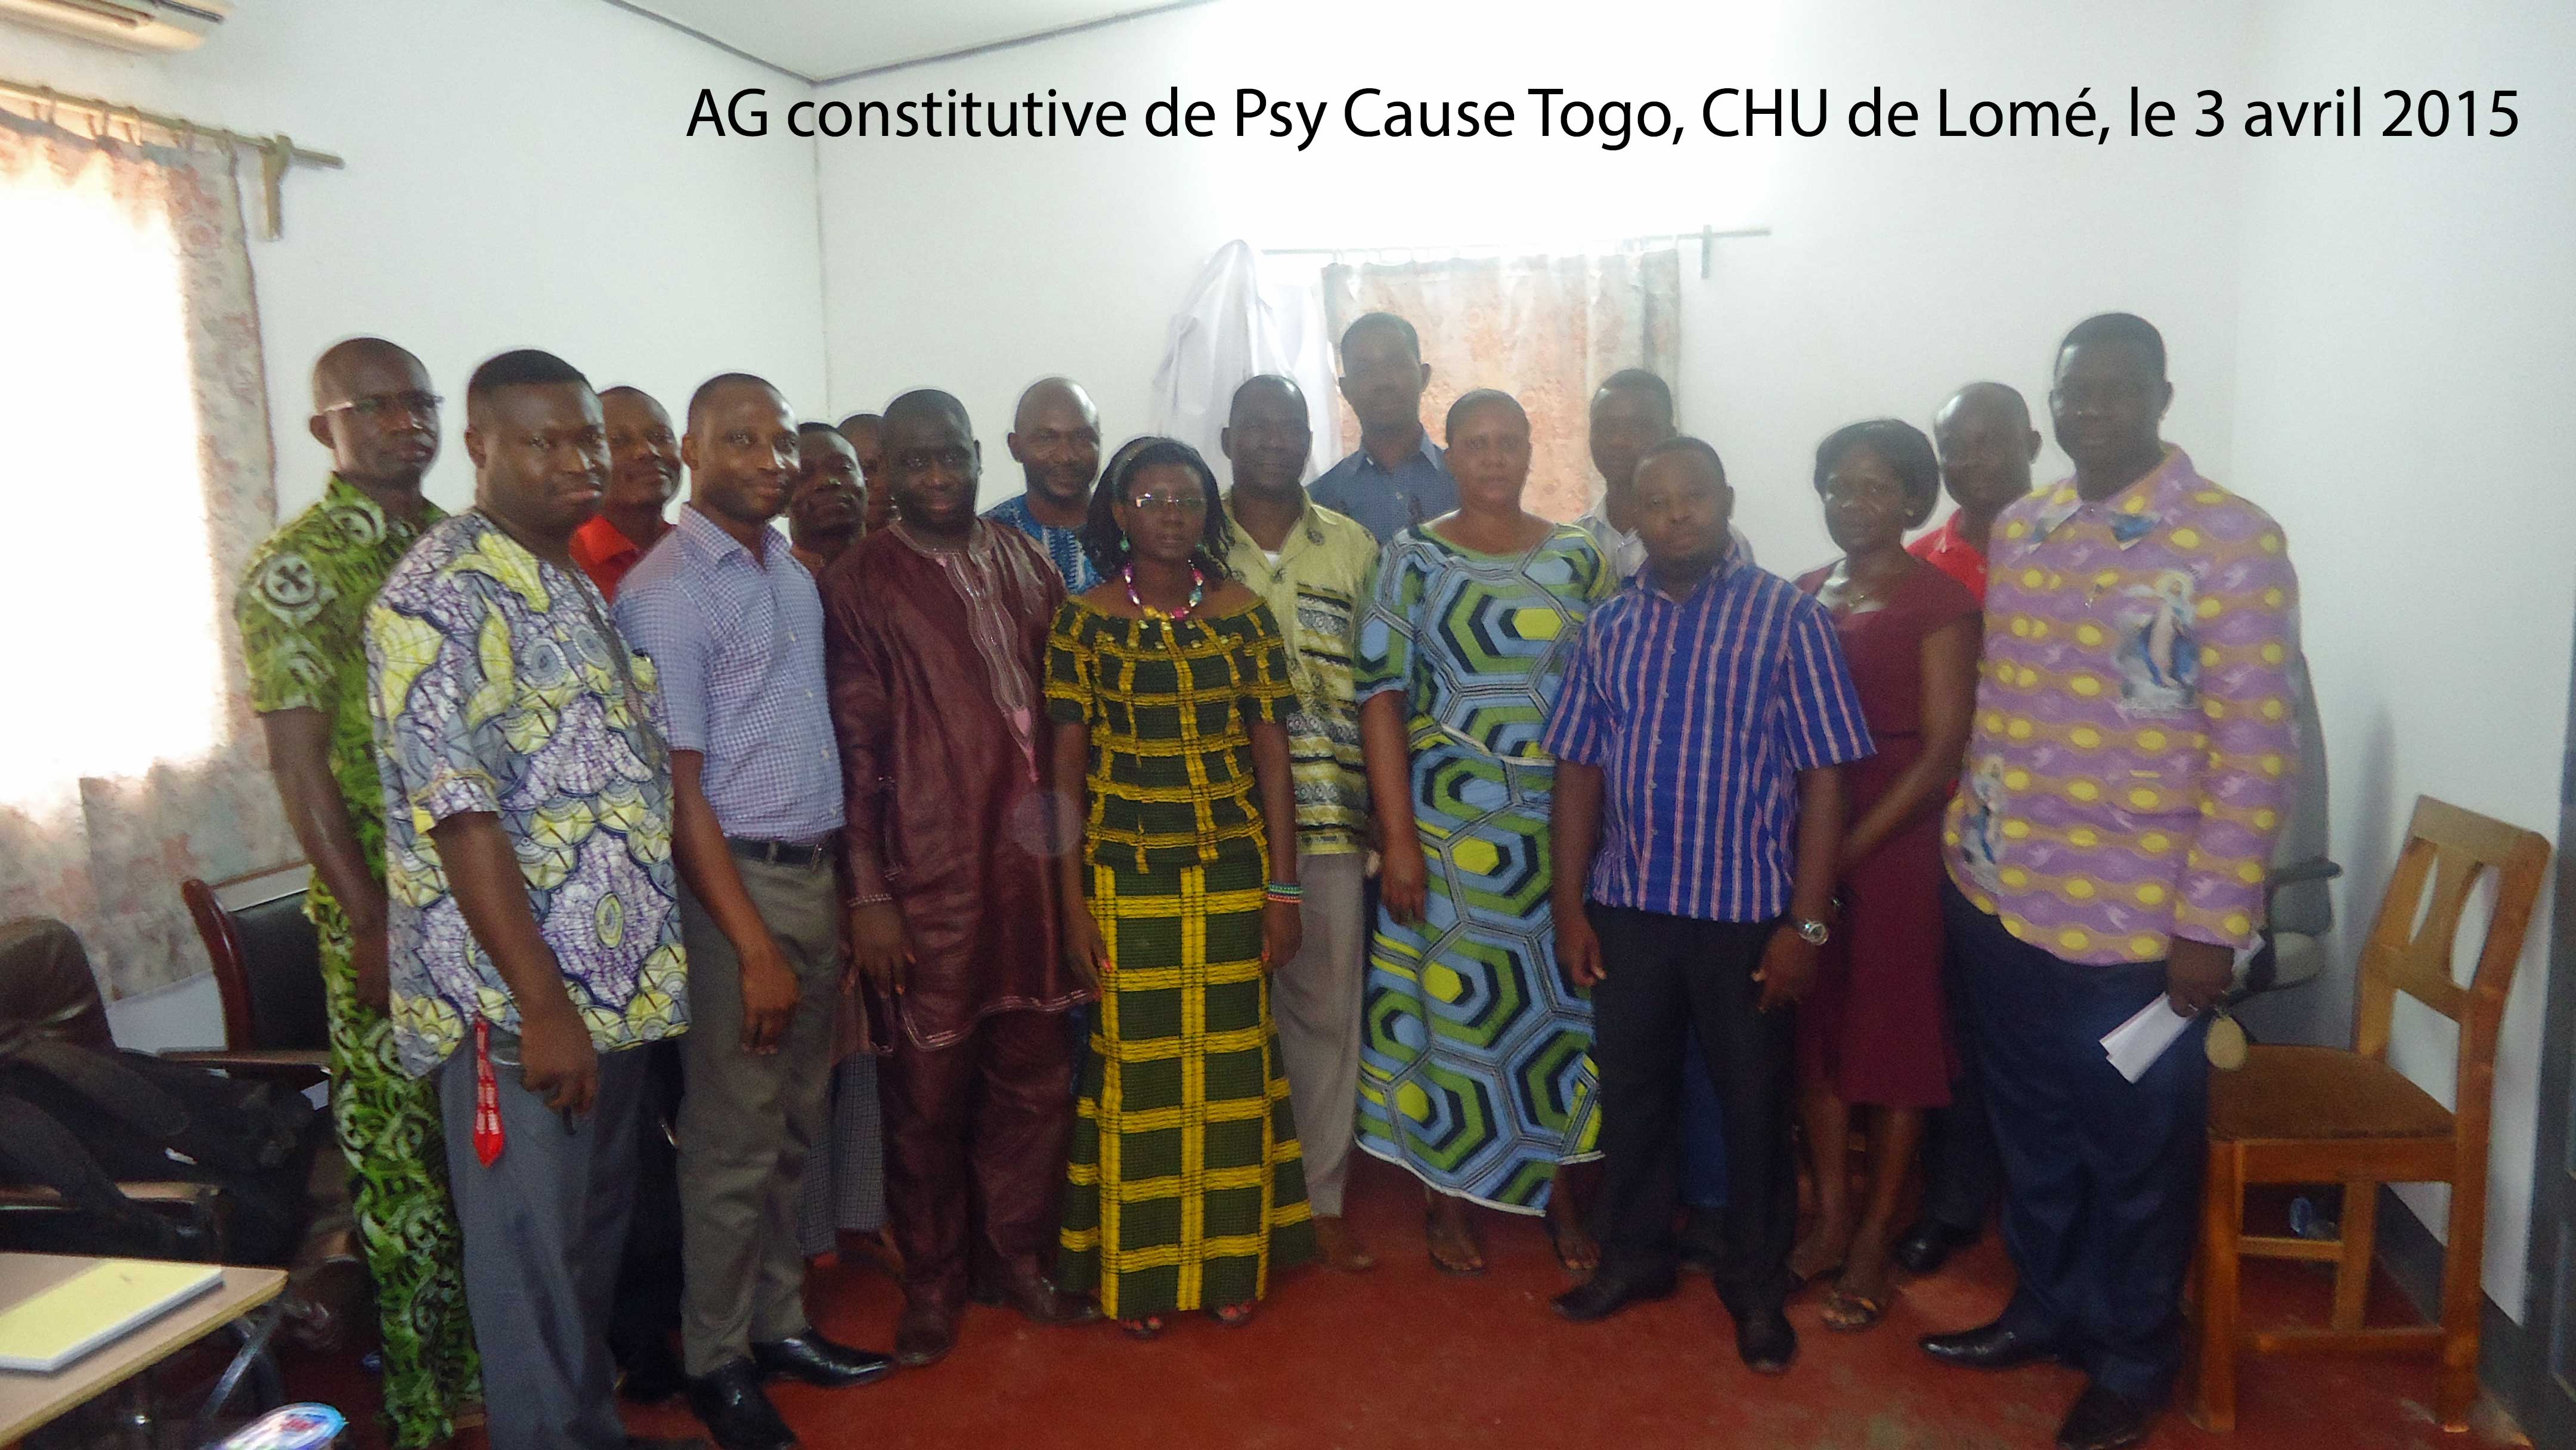 Procès verbal de l’Assemblée Générale constitutive de Psy Cause Togo